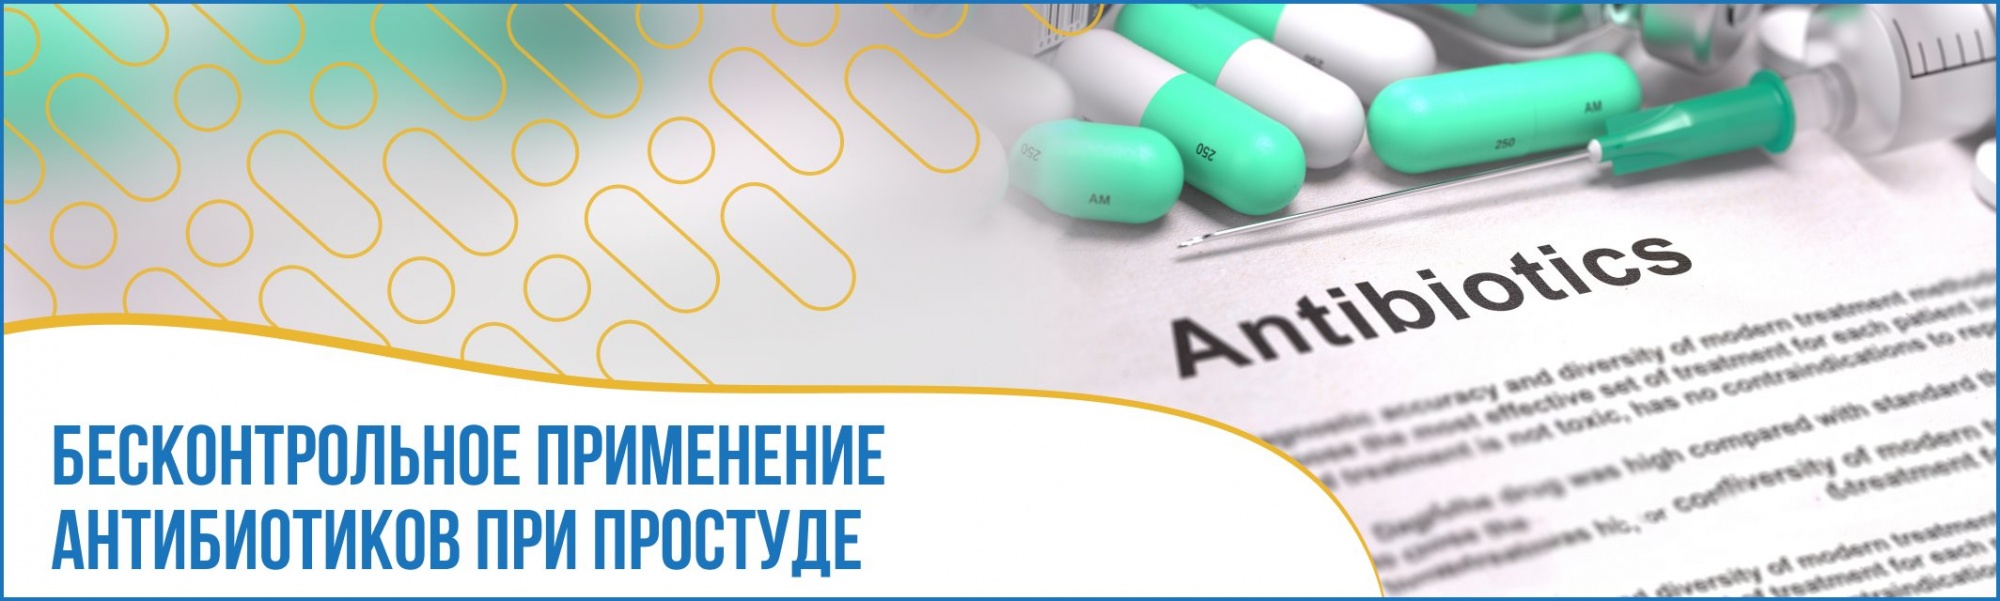 Обзор антибактериальных препаратов (Overview of Antibacterial Drugs)